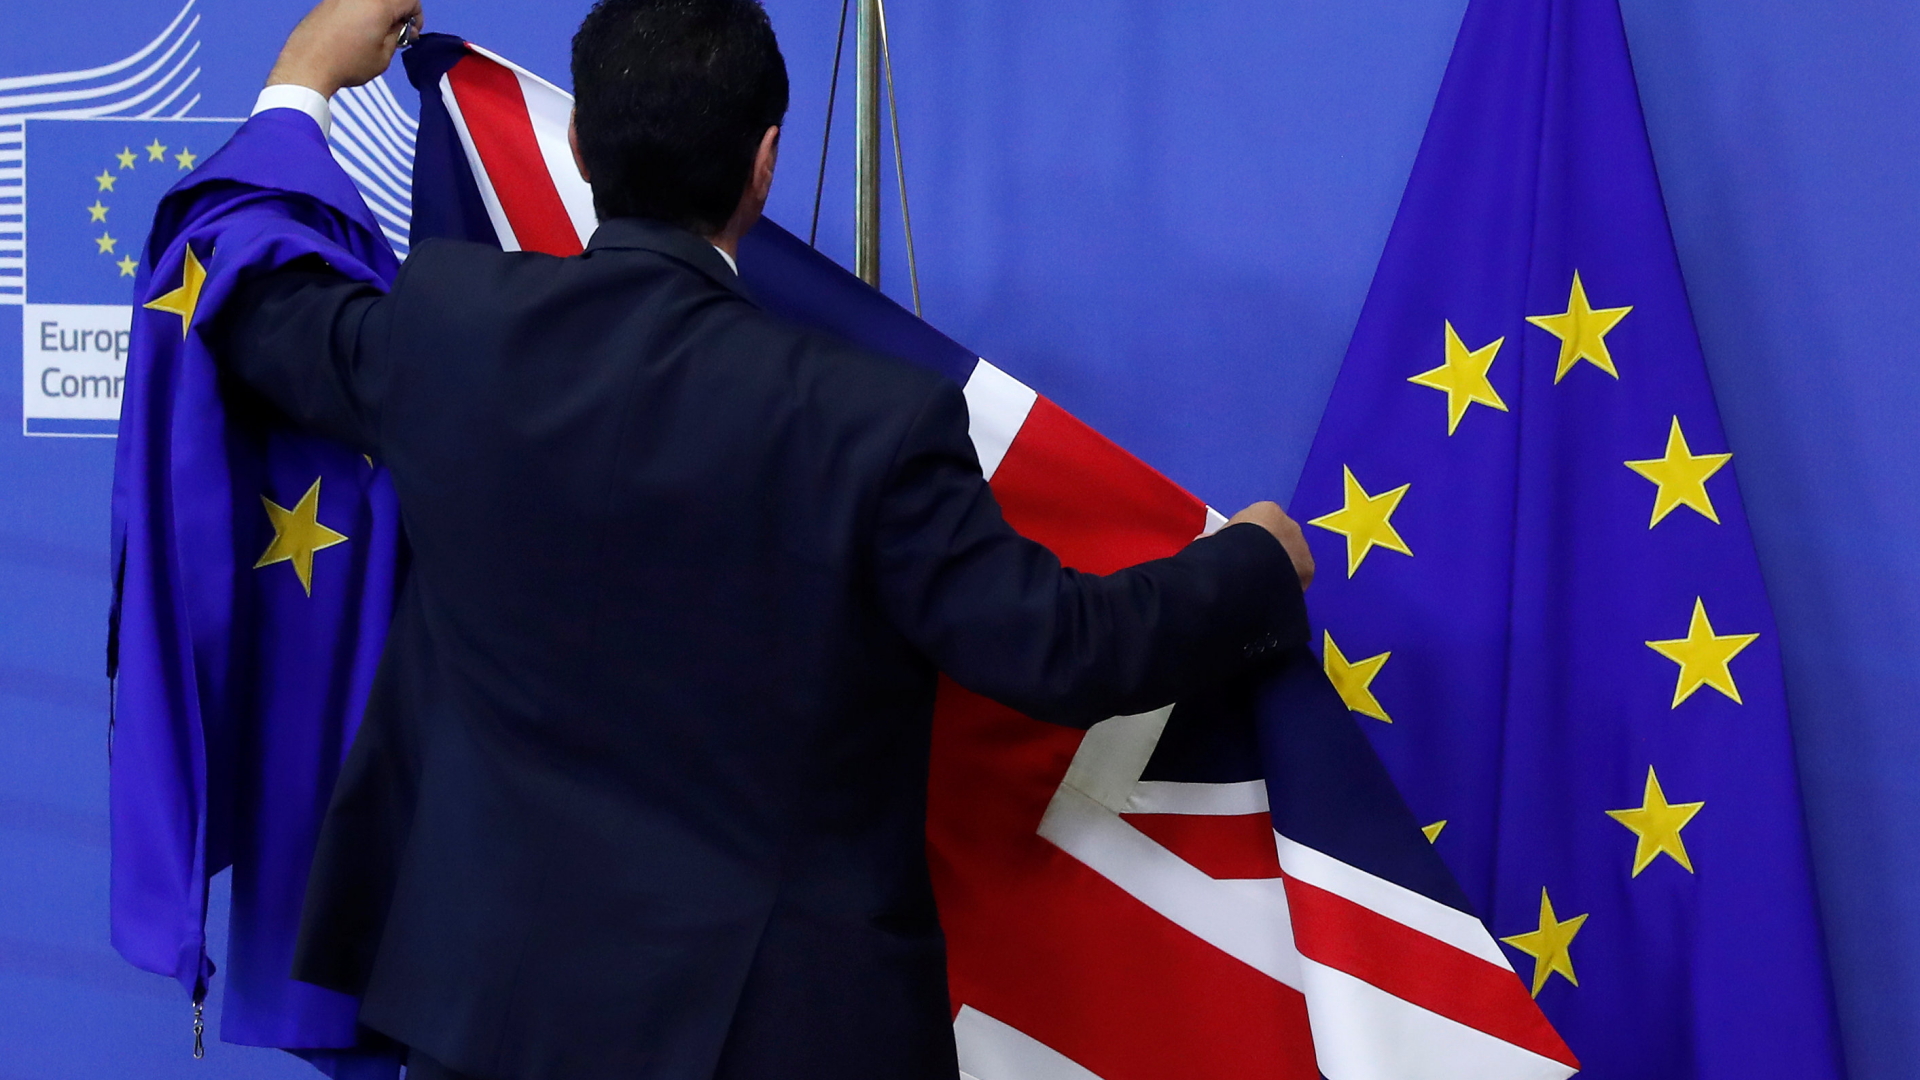 Flaggen der Europäischen Union und Großbritanniens werden aufgehängt.